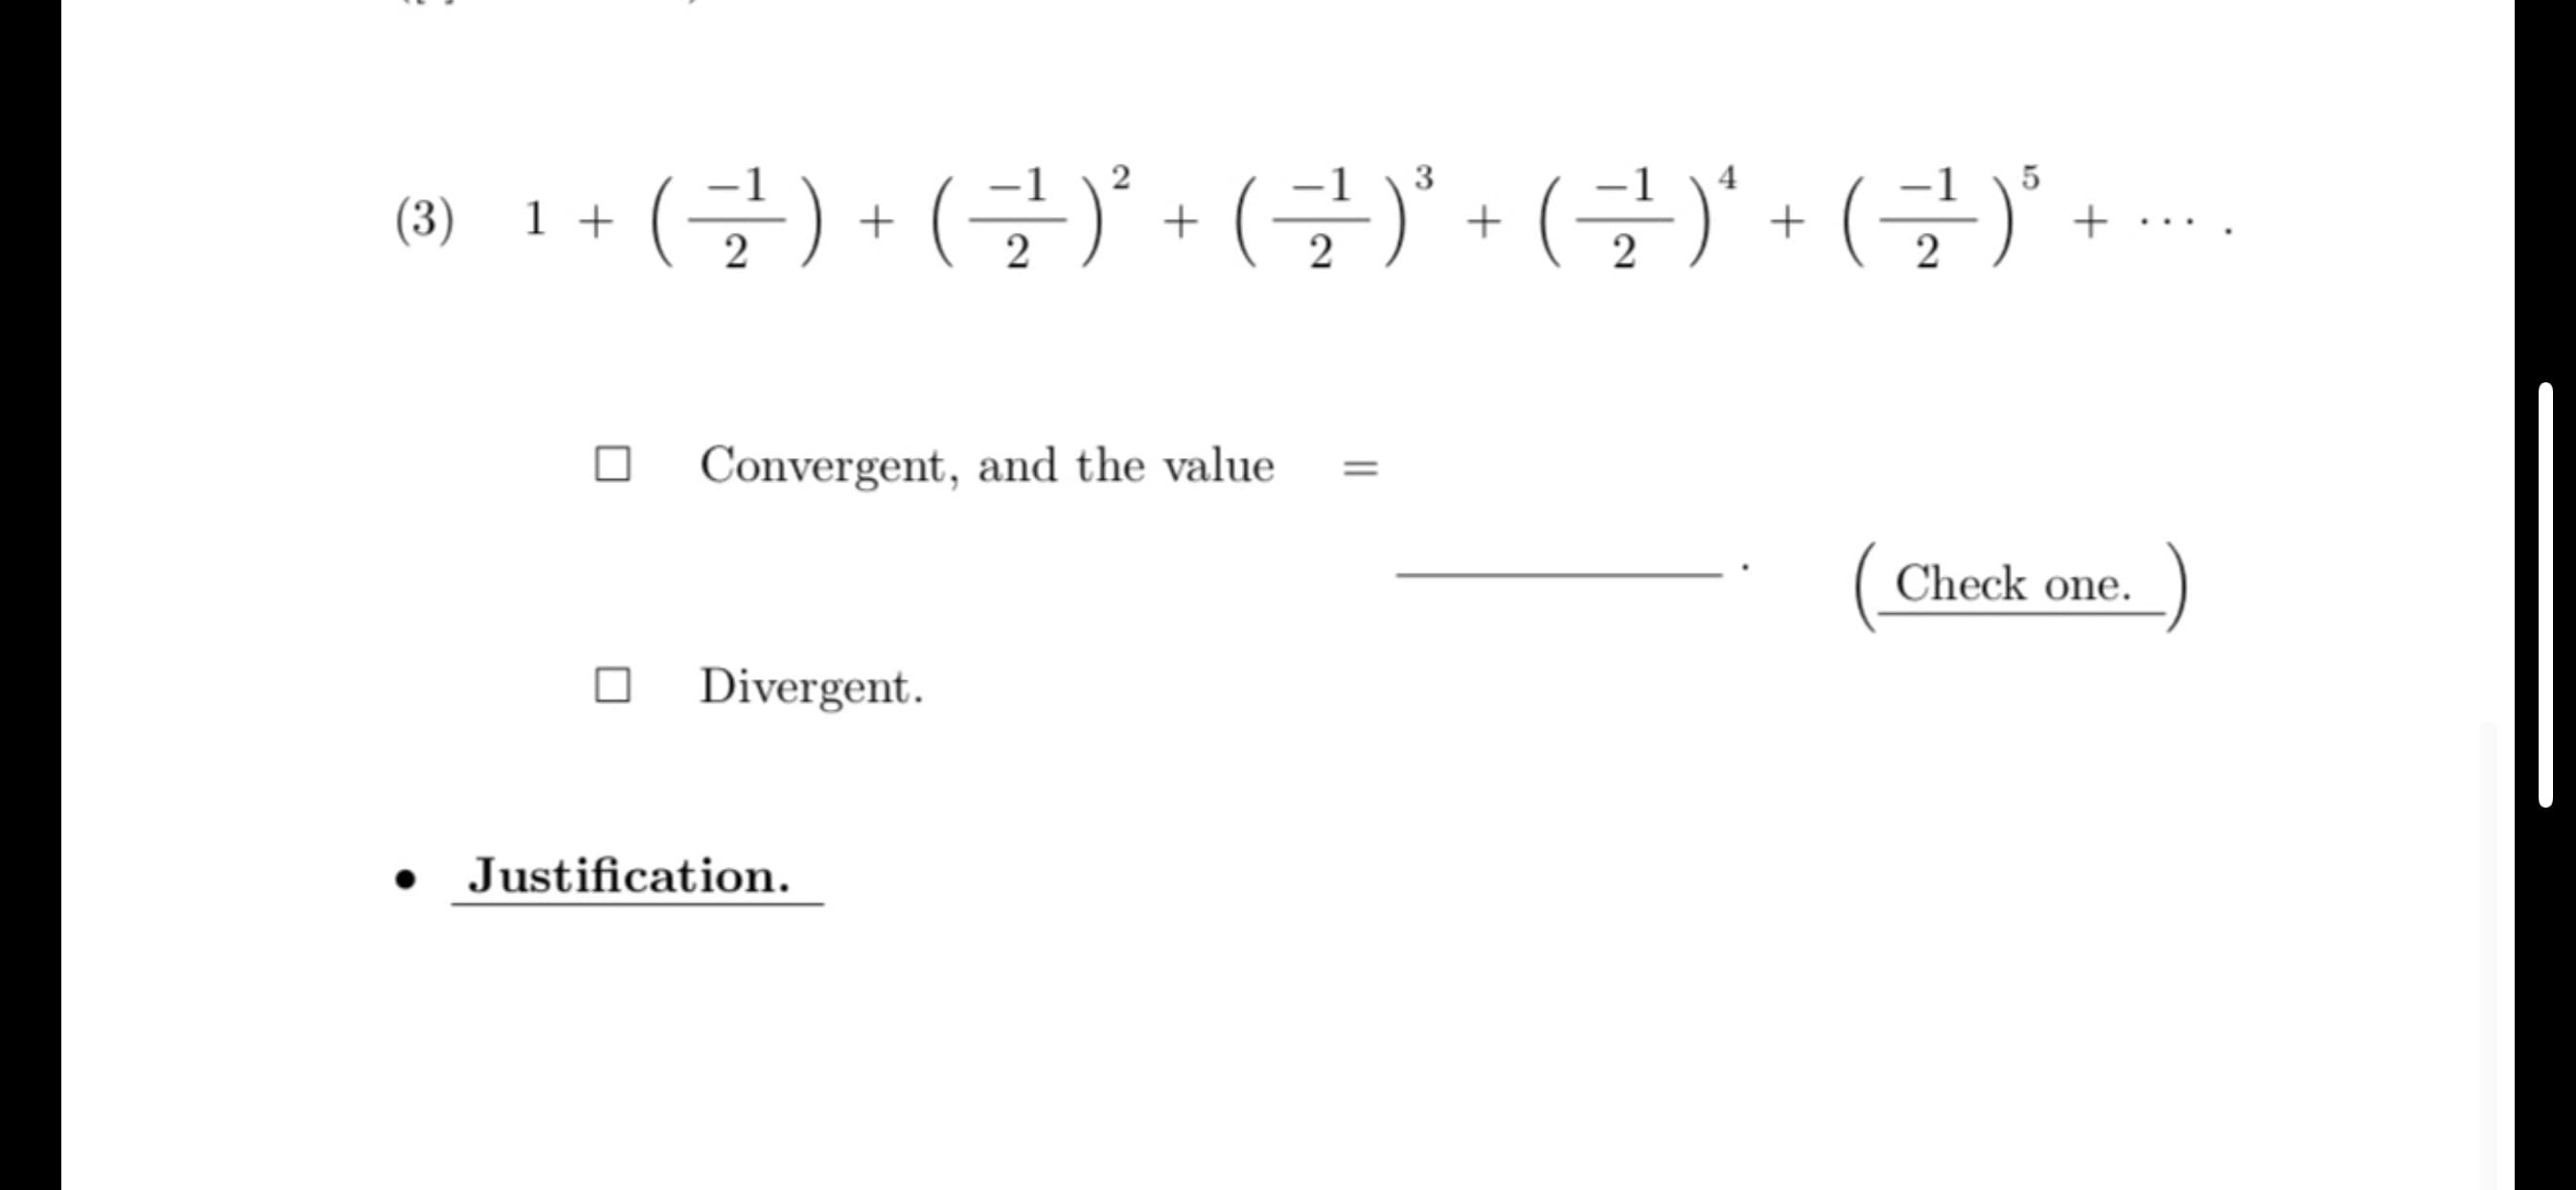 .(글) + (글)' + (글)' + (글)' + (글)' +….
3
5
(3)
1 +
2
Convergent, and the value
Check one.
Divergent.
